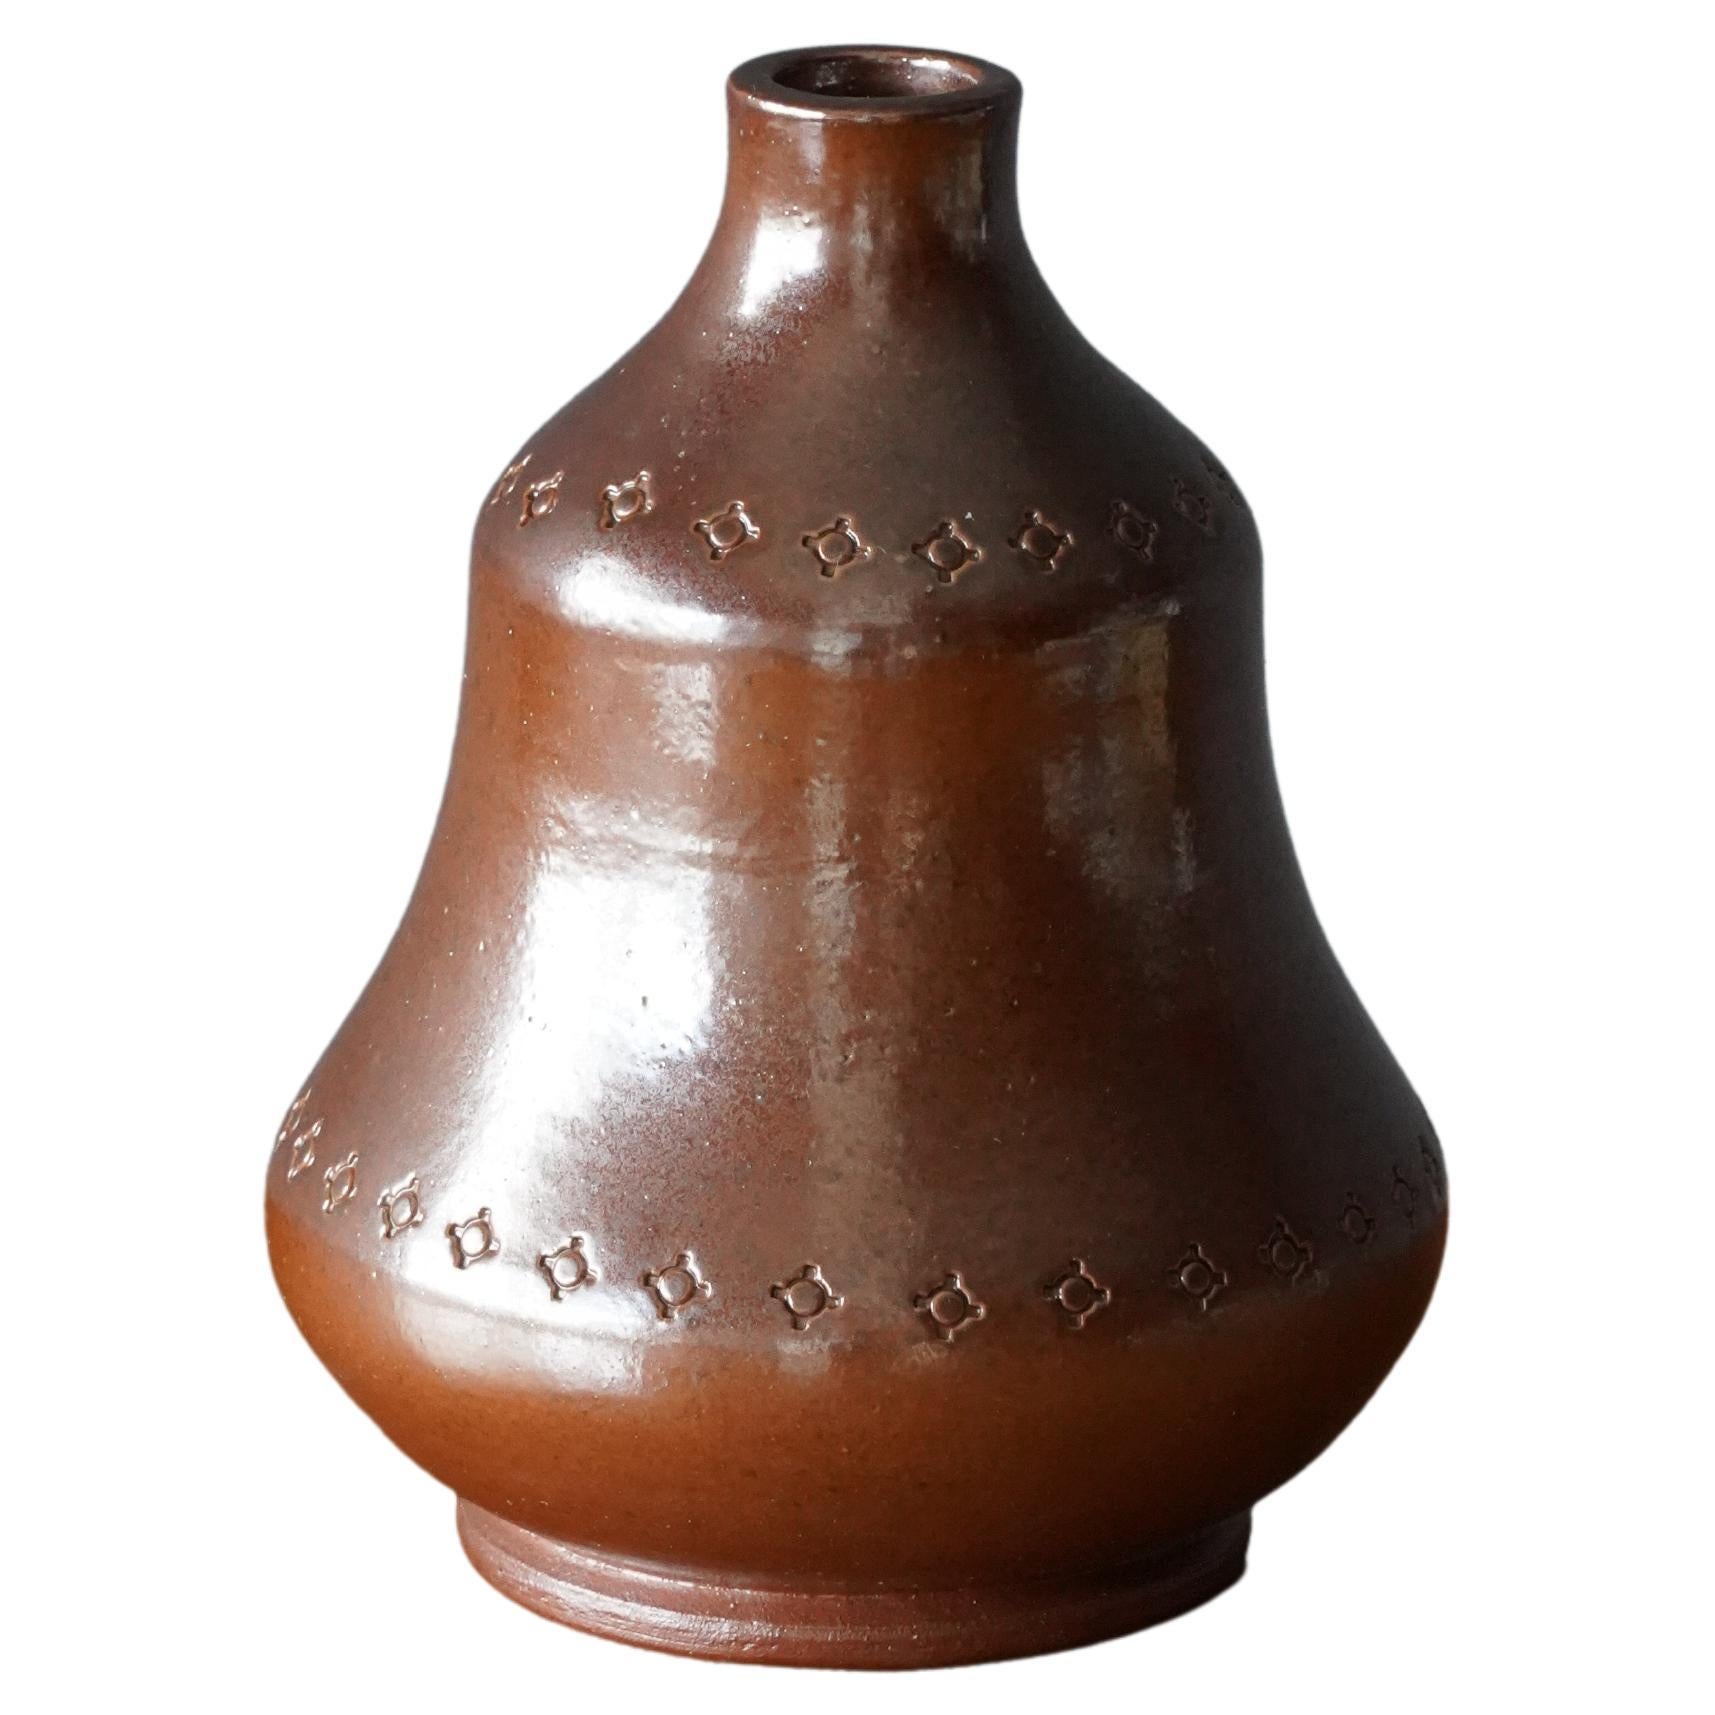 Karl Persson, Vase, Brown Salt Glazed Stoneware, Höganäs Keramik, Sweden, 1940s